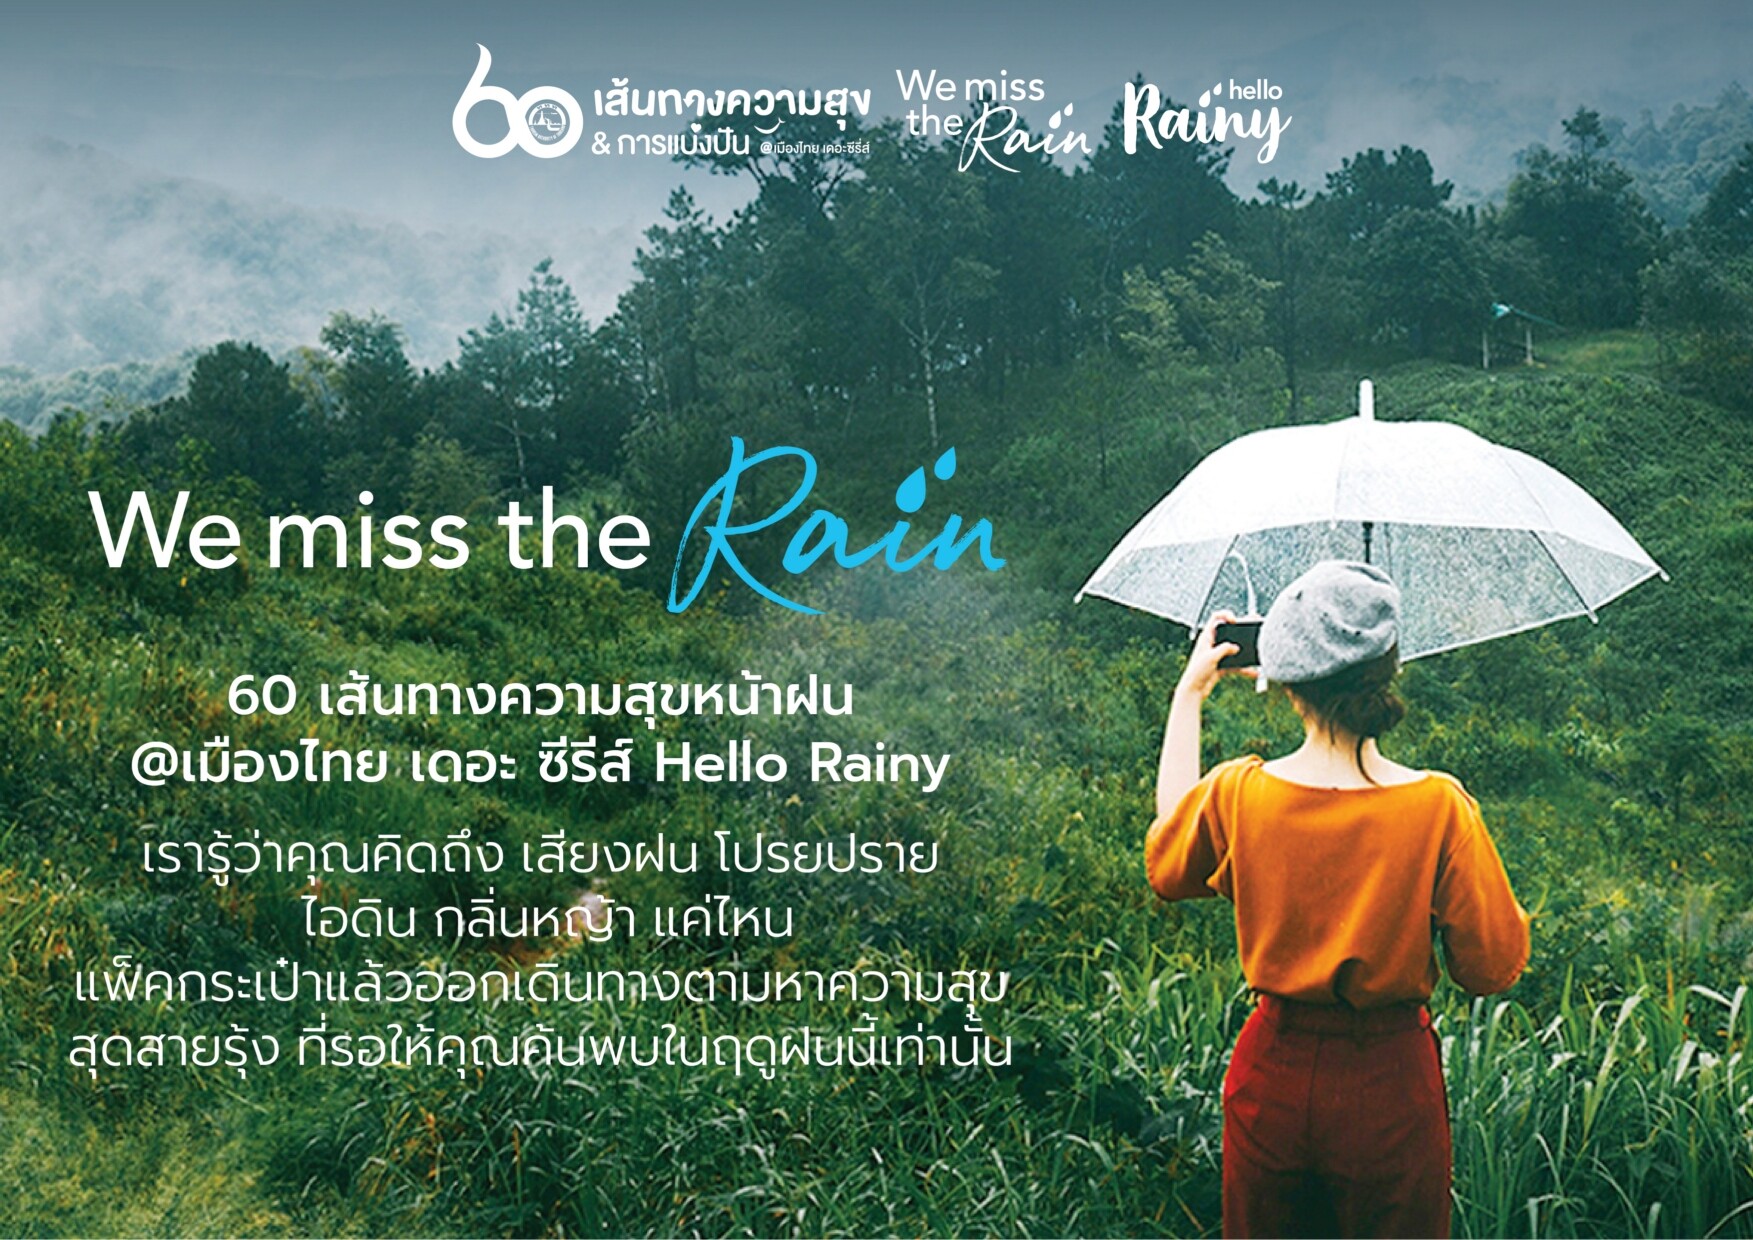 ททท. จัดแคมเปญ “We miss the rain” 60 เส้นทางความสุขหน้าฝน @ เมืองไทย เดอะ ซีรีส์ชวนนักเดินทางแพ็คกระเป๋าออกตามหาความสุขที่คุณคิดถึง